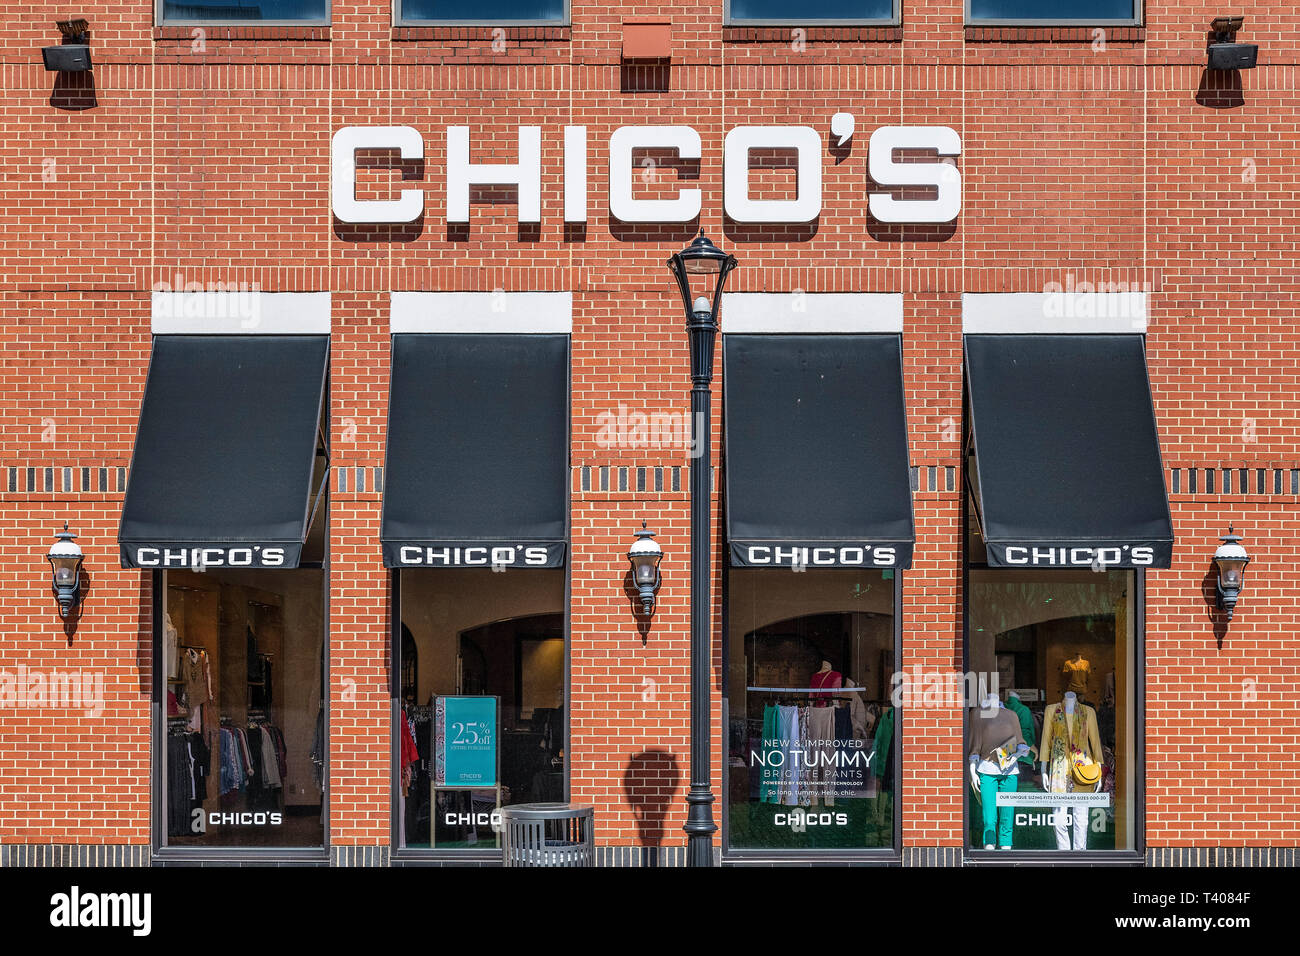 Chico's abbigliamento donna rivenditore, Mall of Georgia, Beuford, Georgia, Stati Uniti d'America. Foto Stock